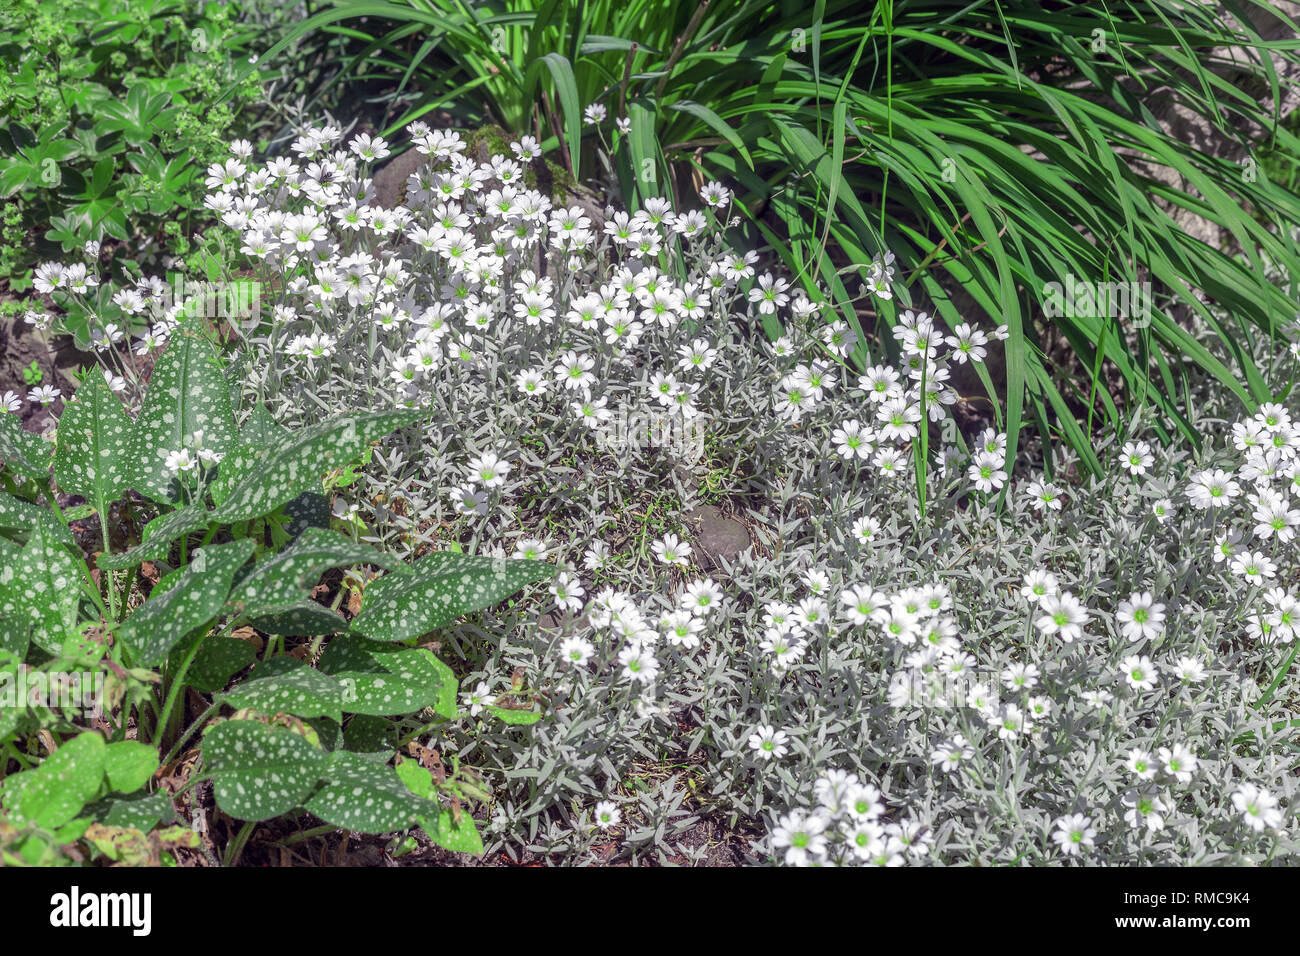 Cerastium kleine weiße Blüten. Maus - Ohr Vogelmiere blühende Pflanze im  Frühjahr Garten Stockfotografie - Alamy